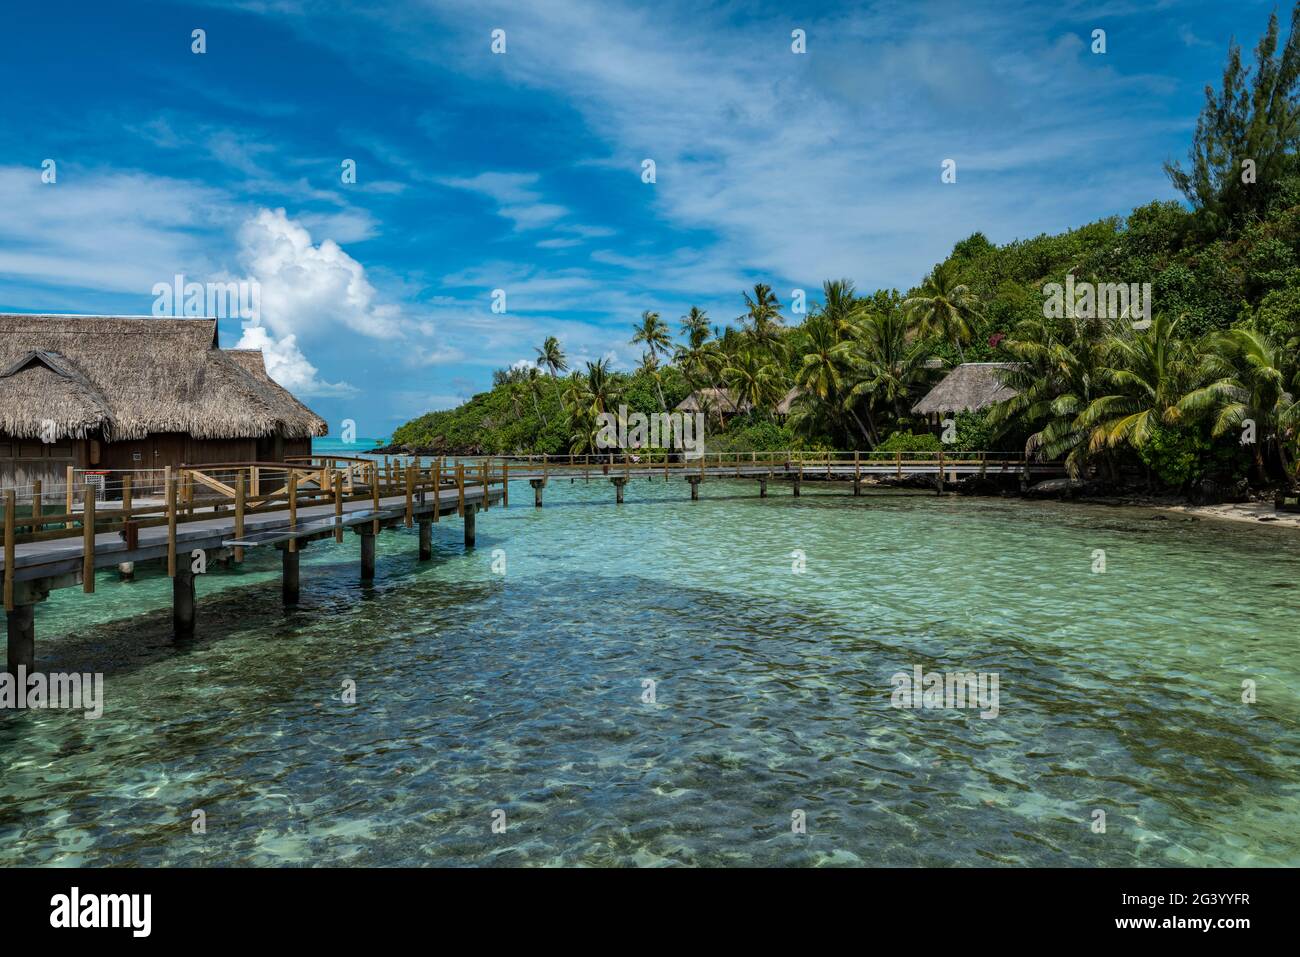 Pasarela de madera y bungalows sobre el agua en Sofitel Bora Bora Private Island Resort, Bora Bora, Islas Leeward, Polinesia Francesa, Pacífico Sur Foto de stock